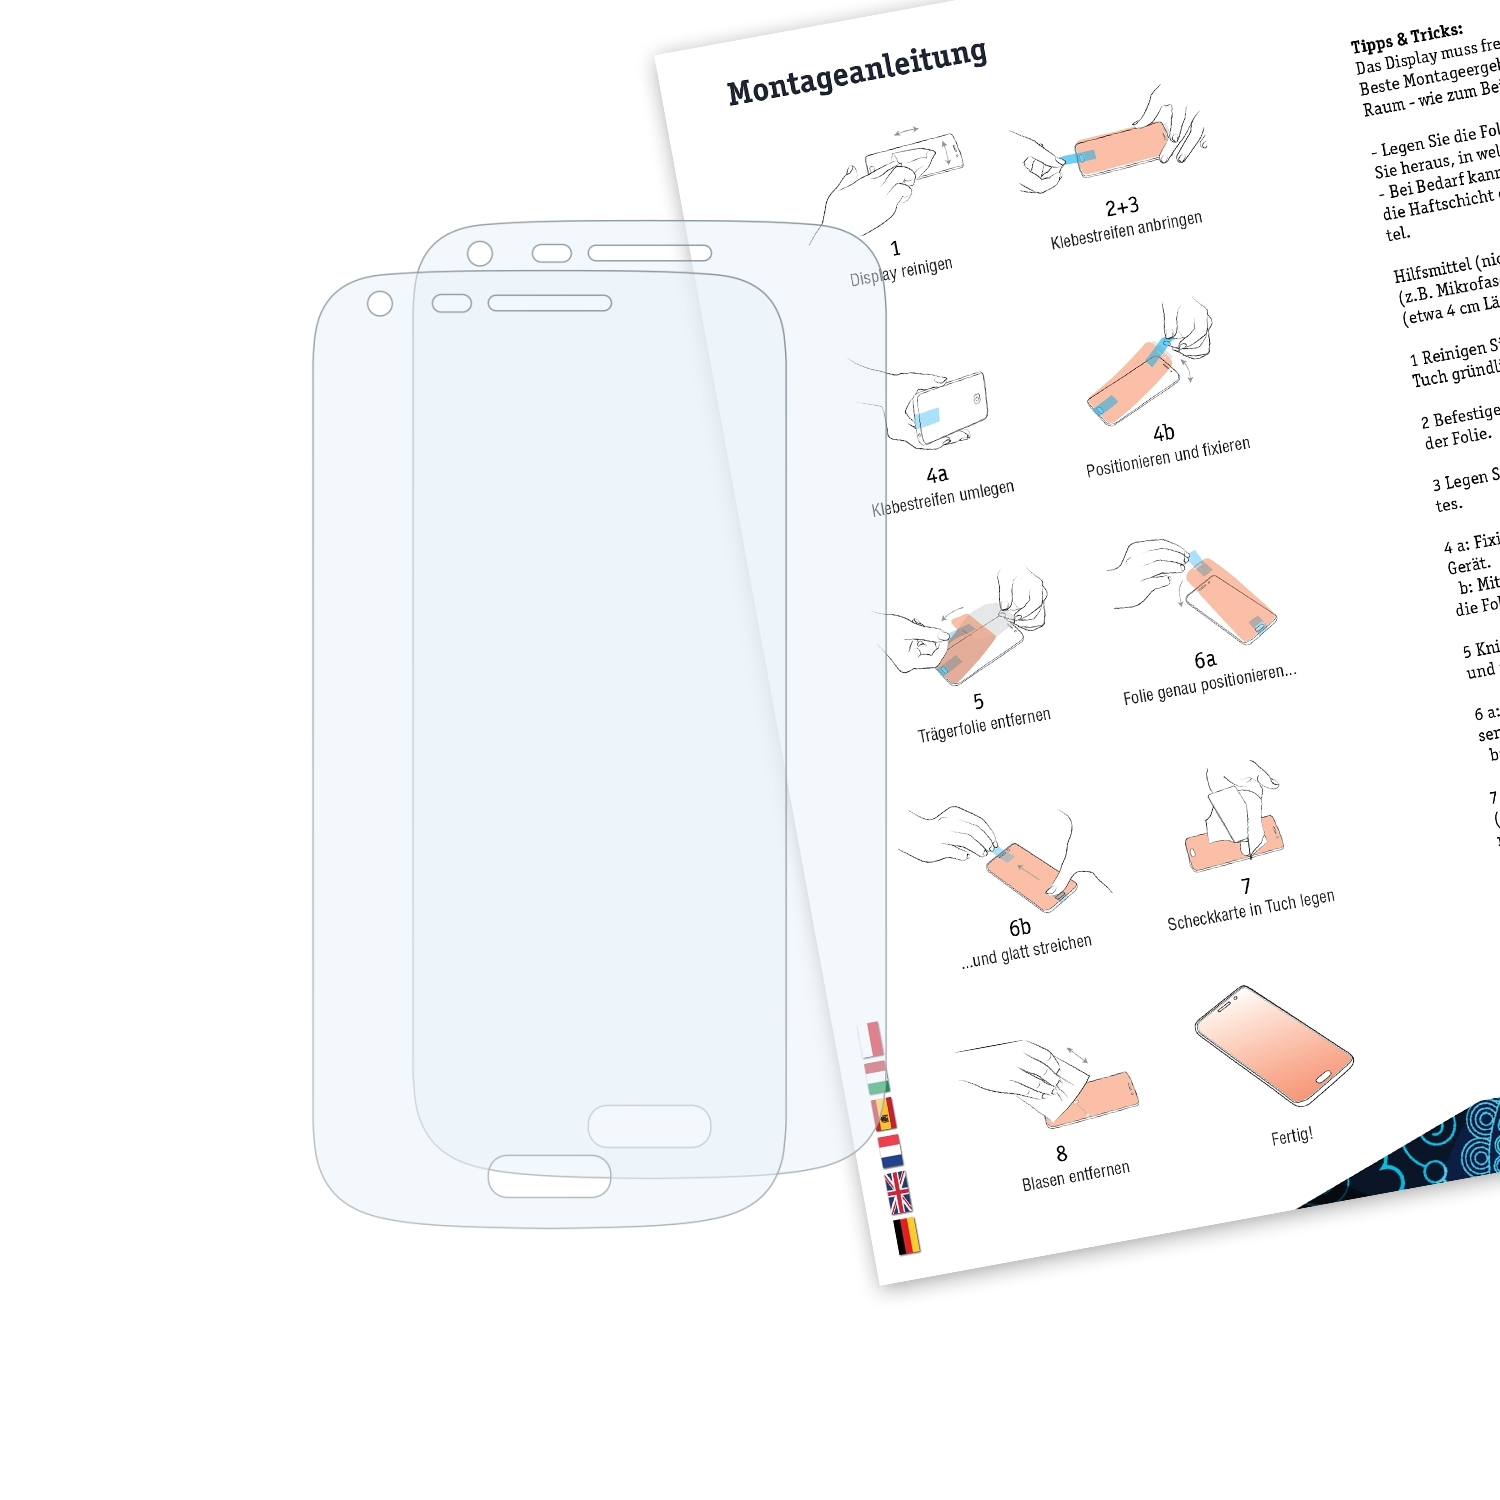 Samsung 2x Core Plus BRUNI Basics-Clear G3500) Schutzfolie(für Galaxy